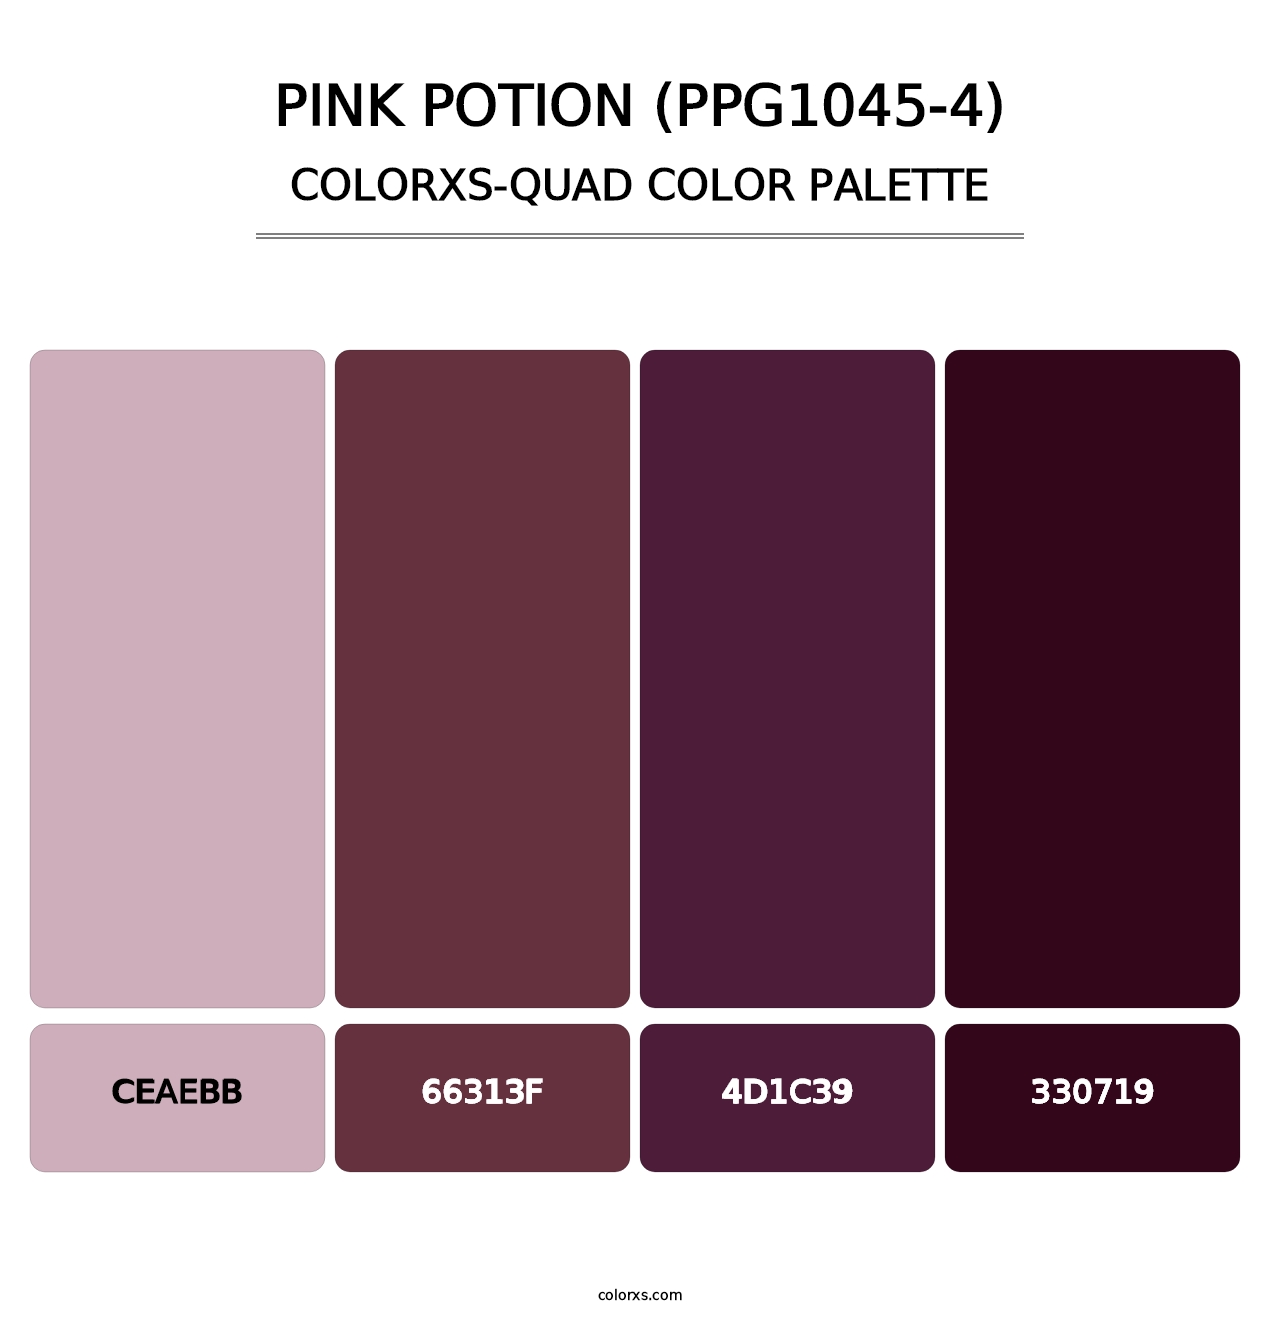 Pink Potion (PPG1045-4) - Colorxs Quad Palette